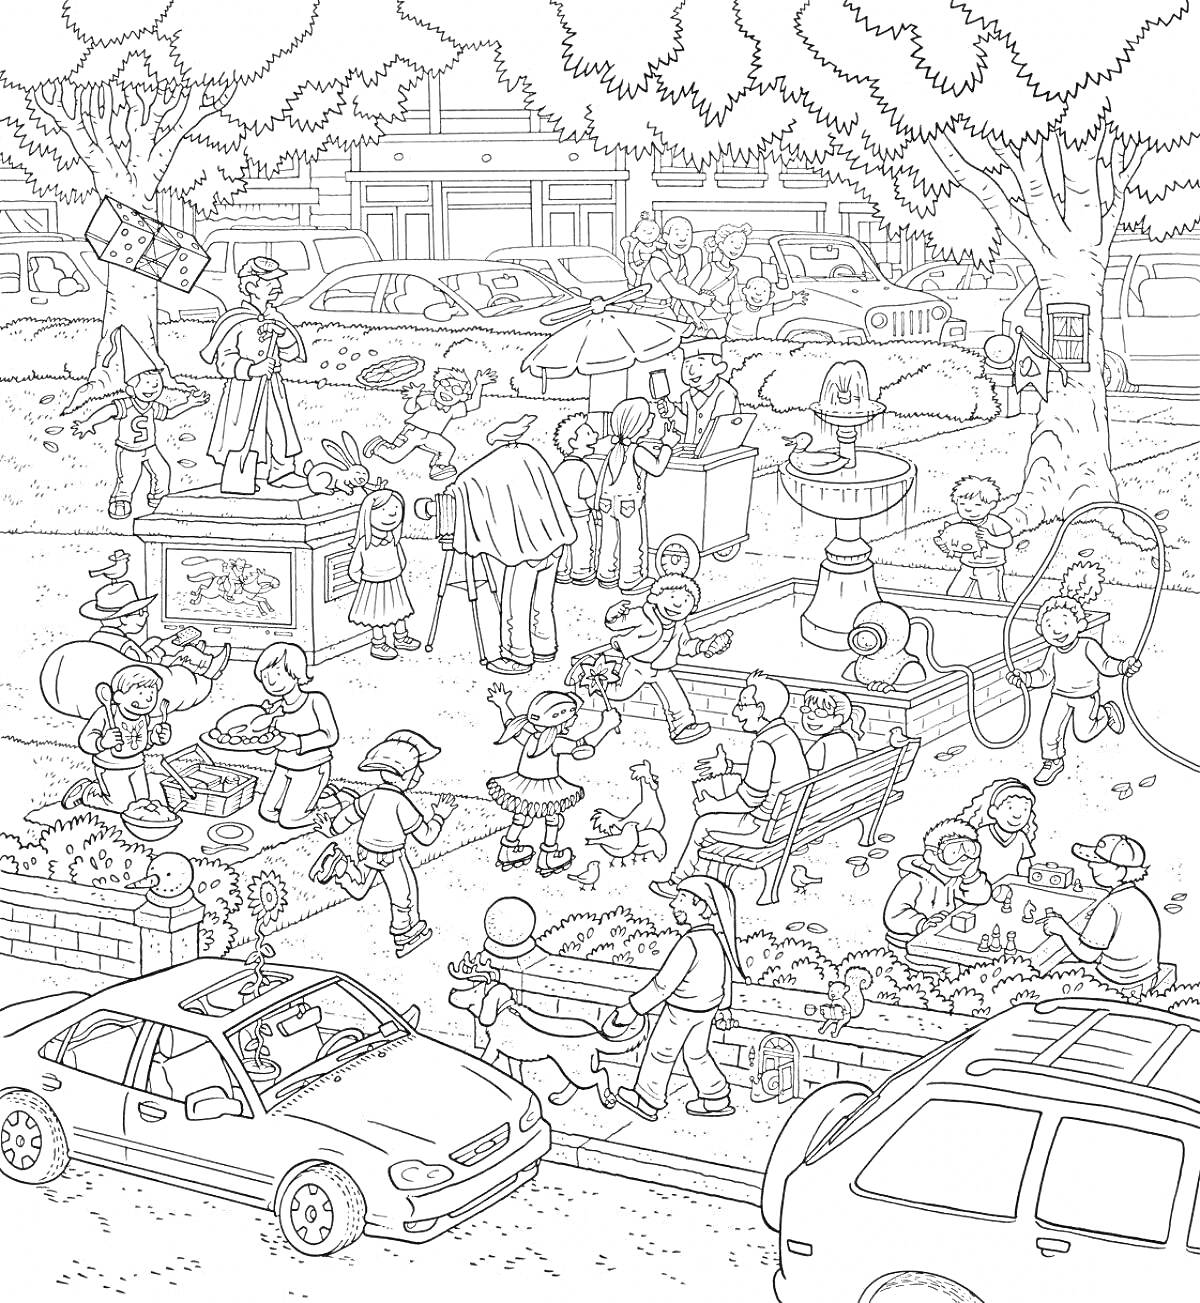 Раскраска Парк с множеством людей, детей, аттракционов и автомобилей на фоне